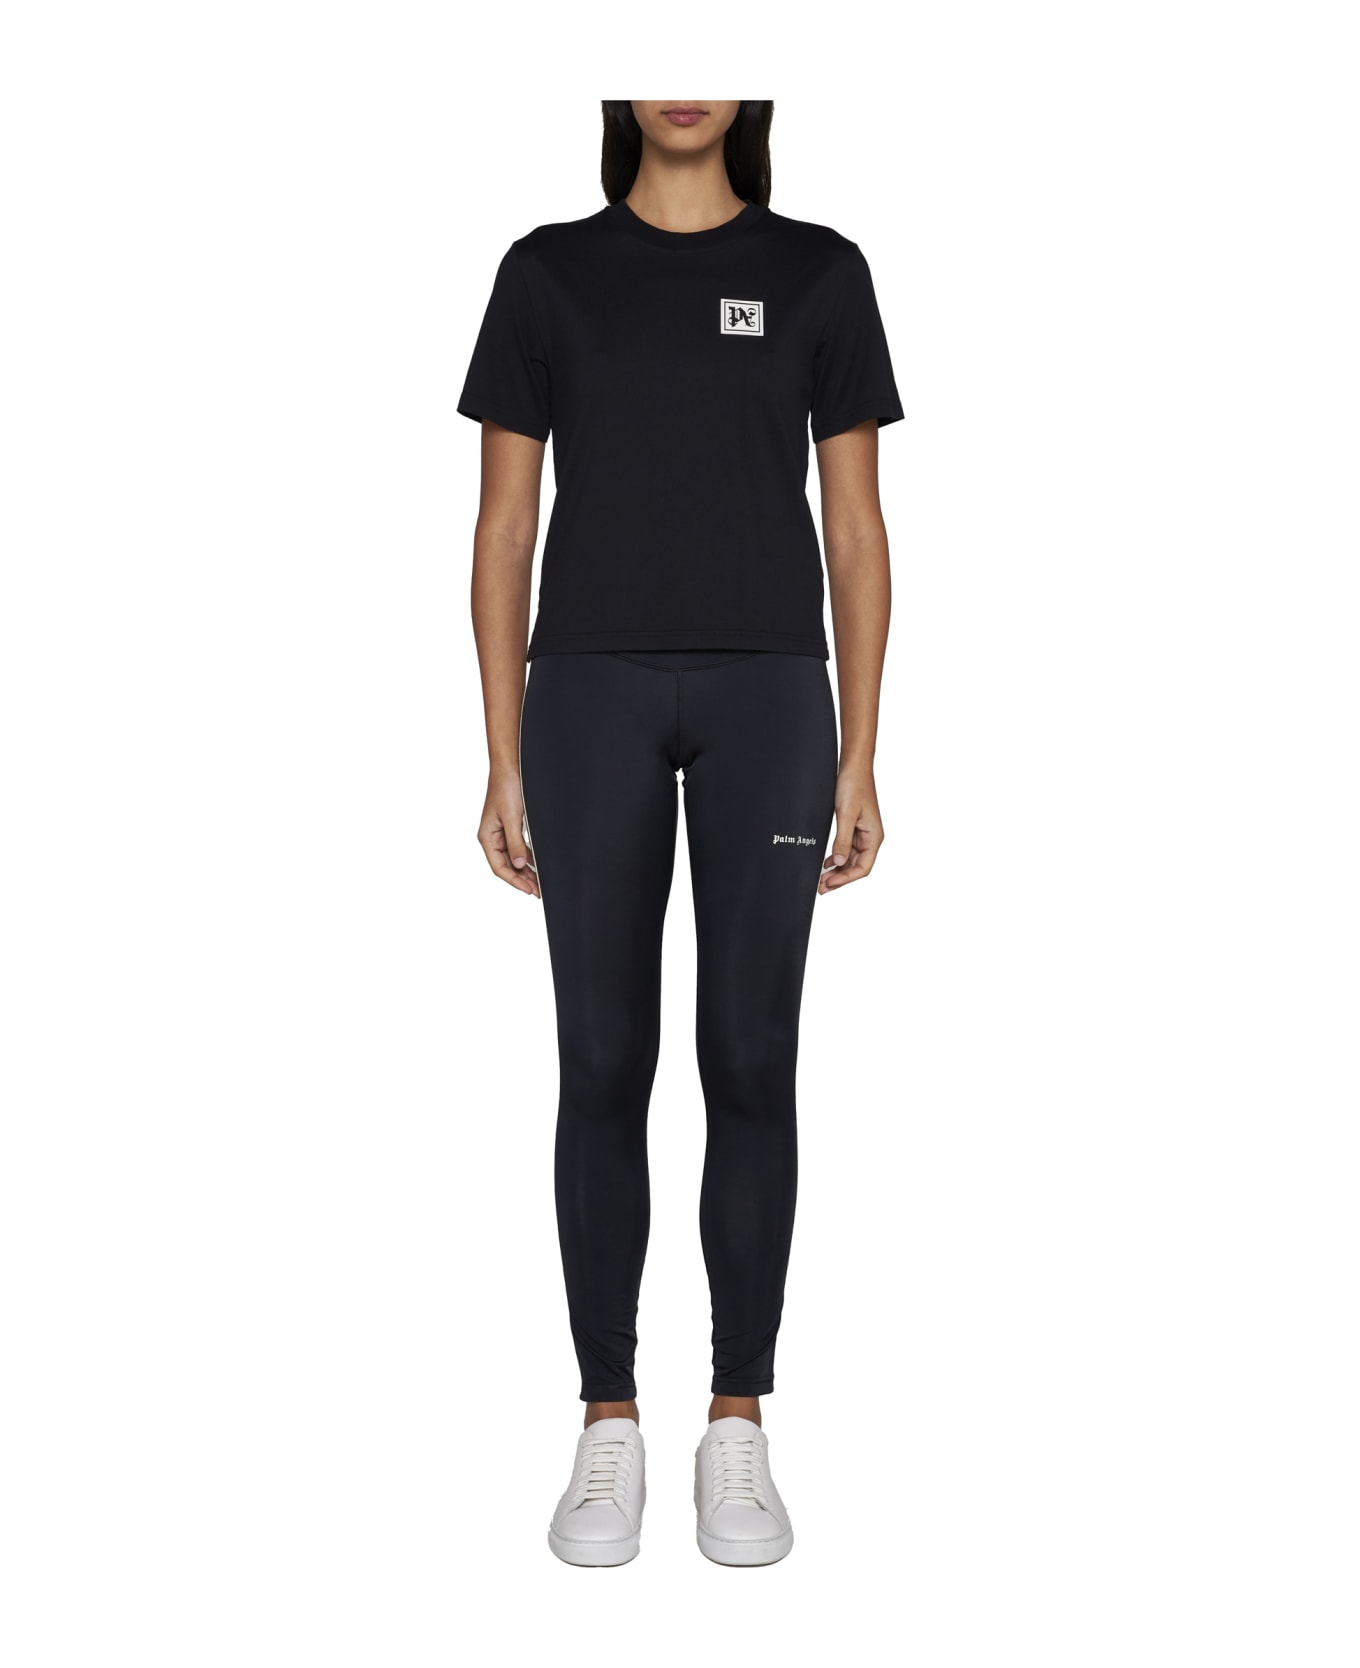 Palm Angels Ski Club T-shirt - BLACK WHITE (Black) Tシャツ